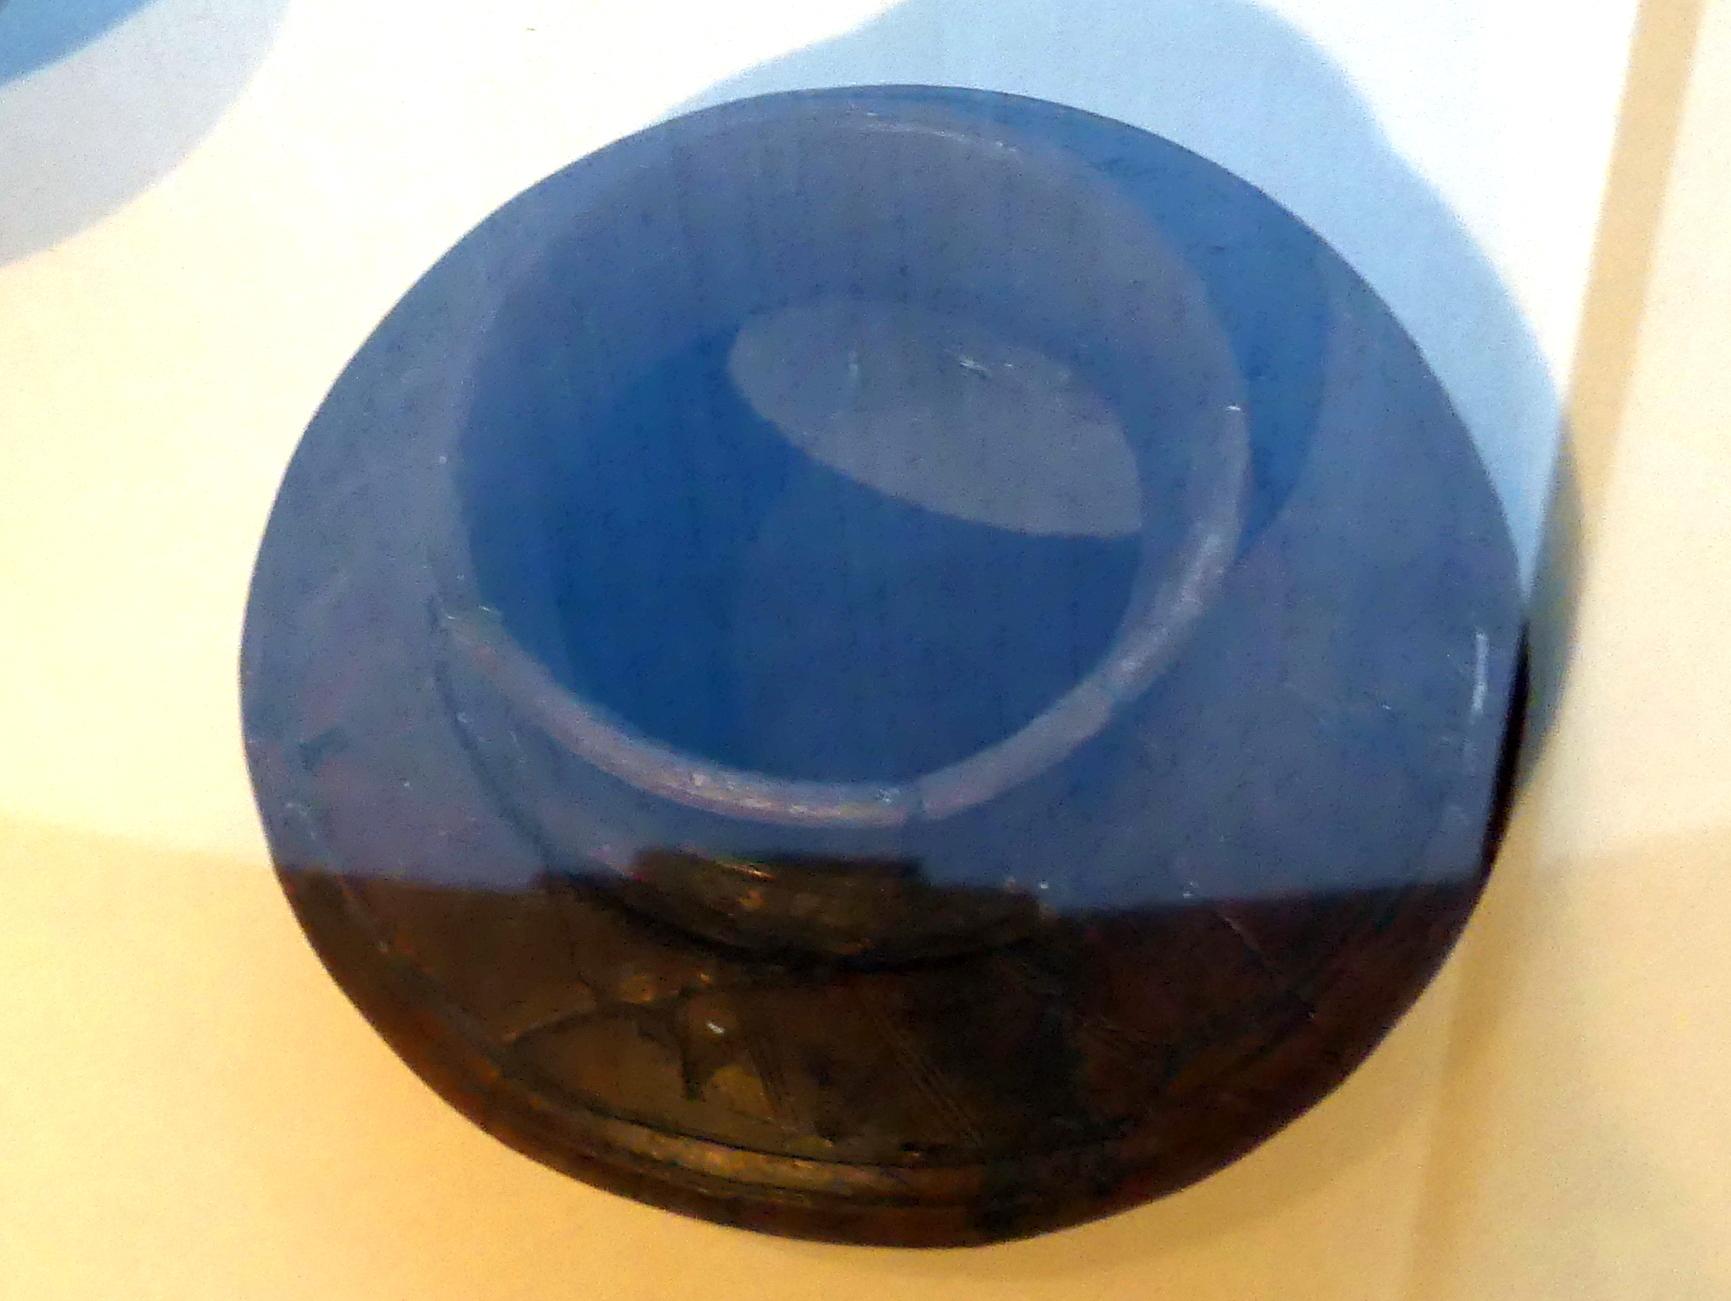 Linsenflasche, mit Volutendekor, Latènezeit, 700 - 1 v. Chr., Bild 1/2